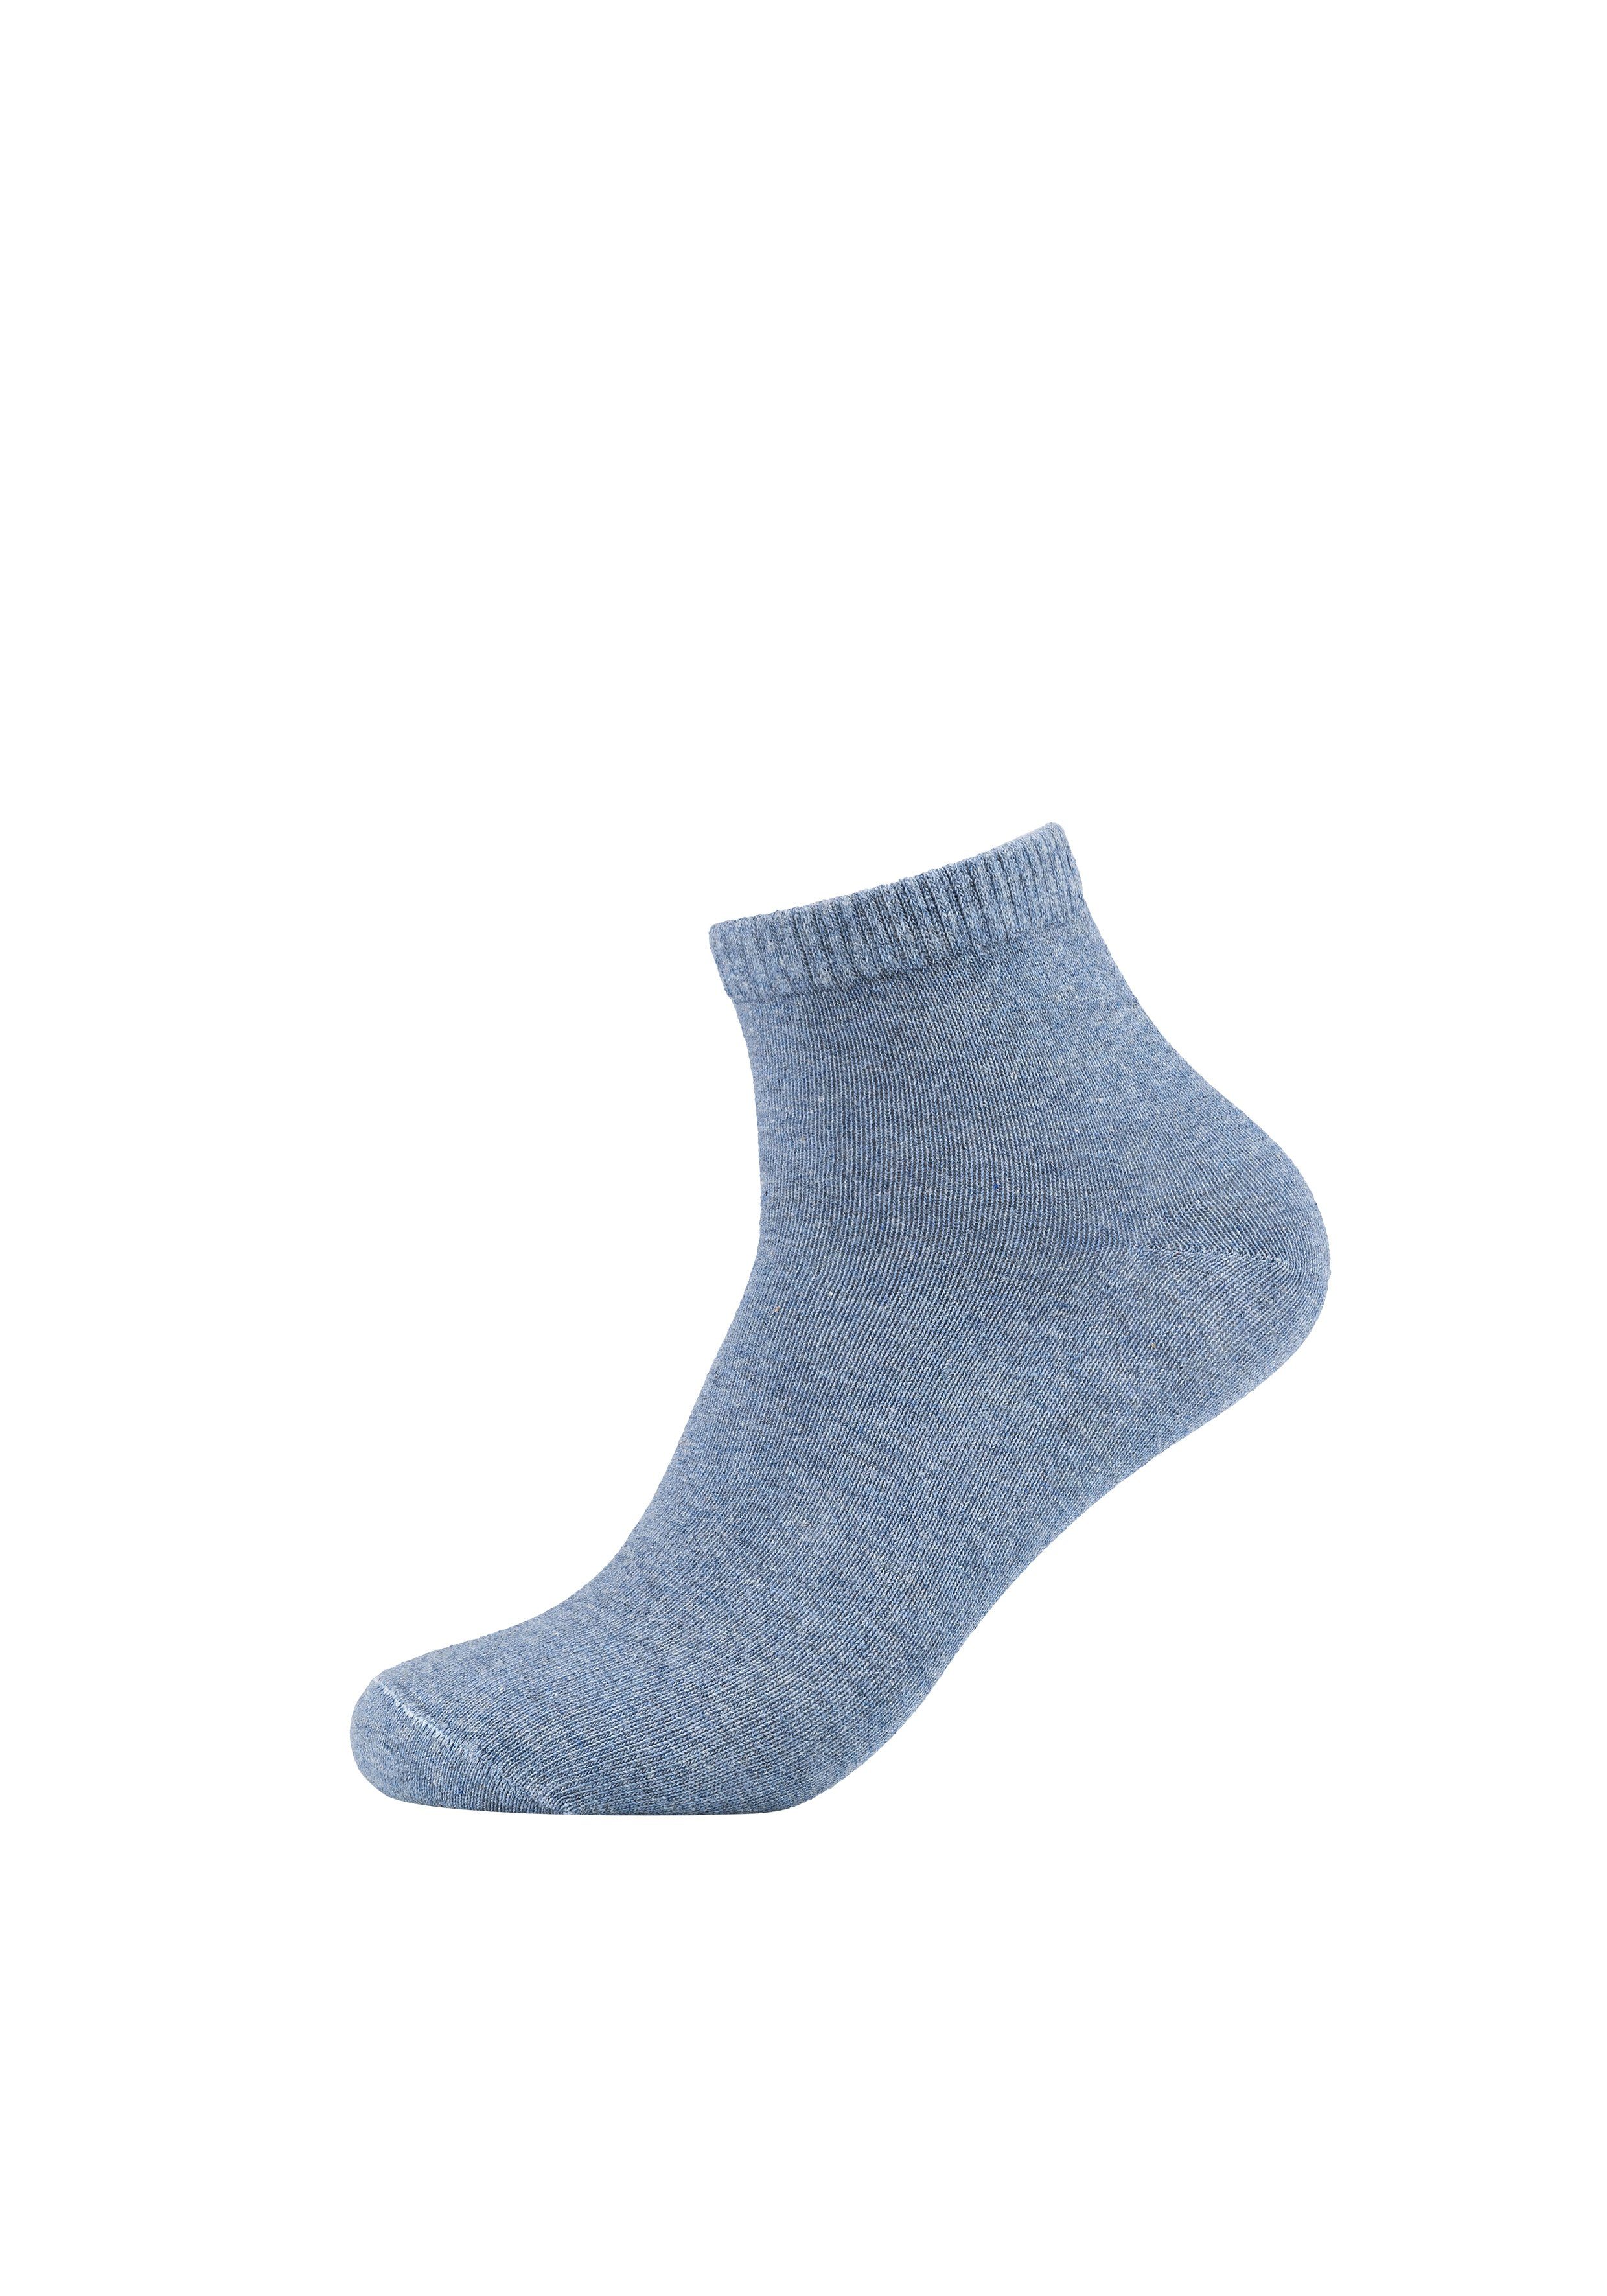 8er Essentials praktischen im s.Oliver Pack blau, (8-Paar) grau Socken